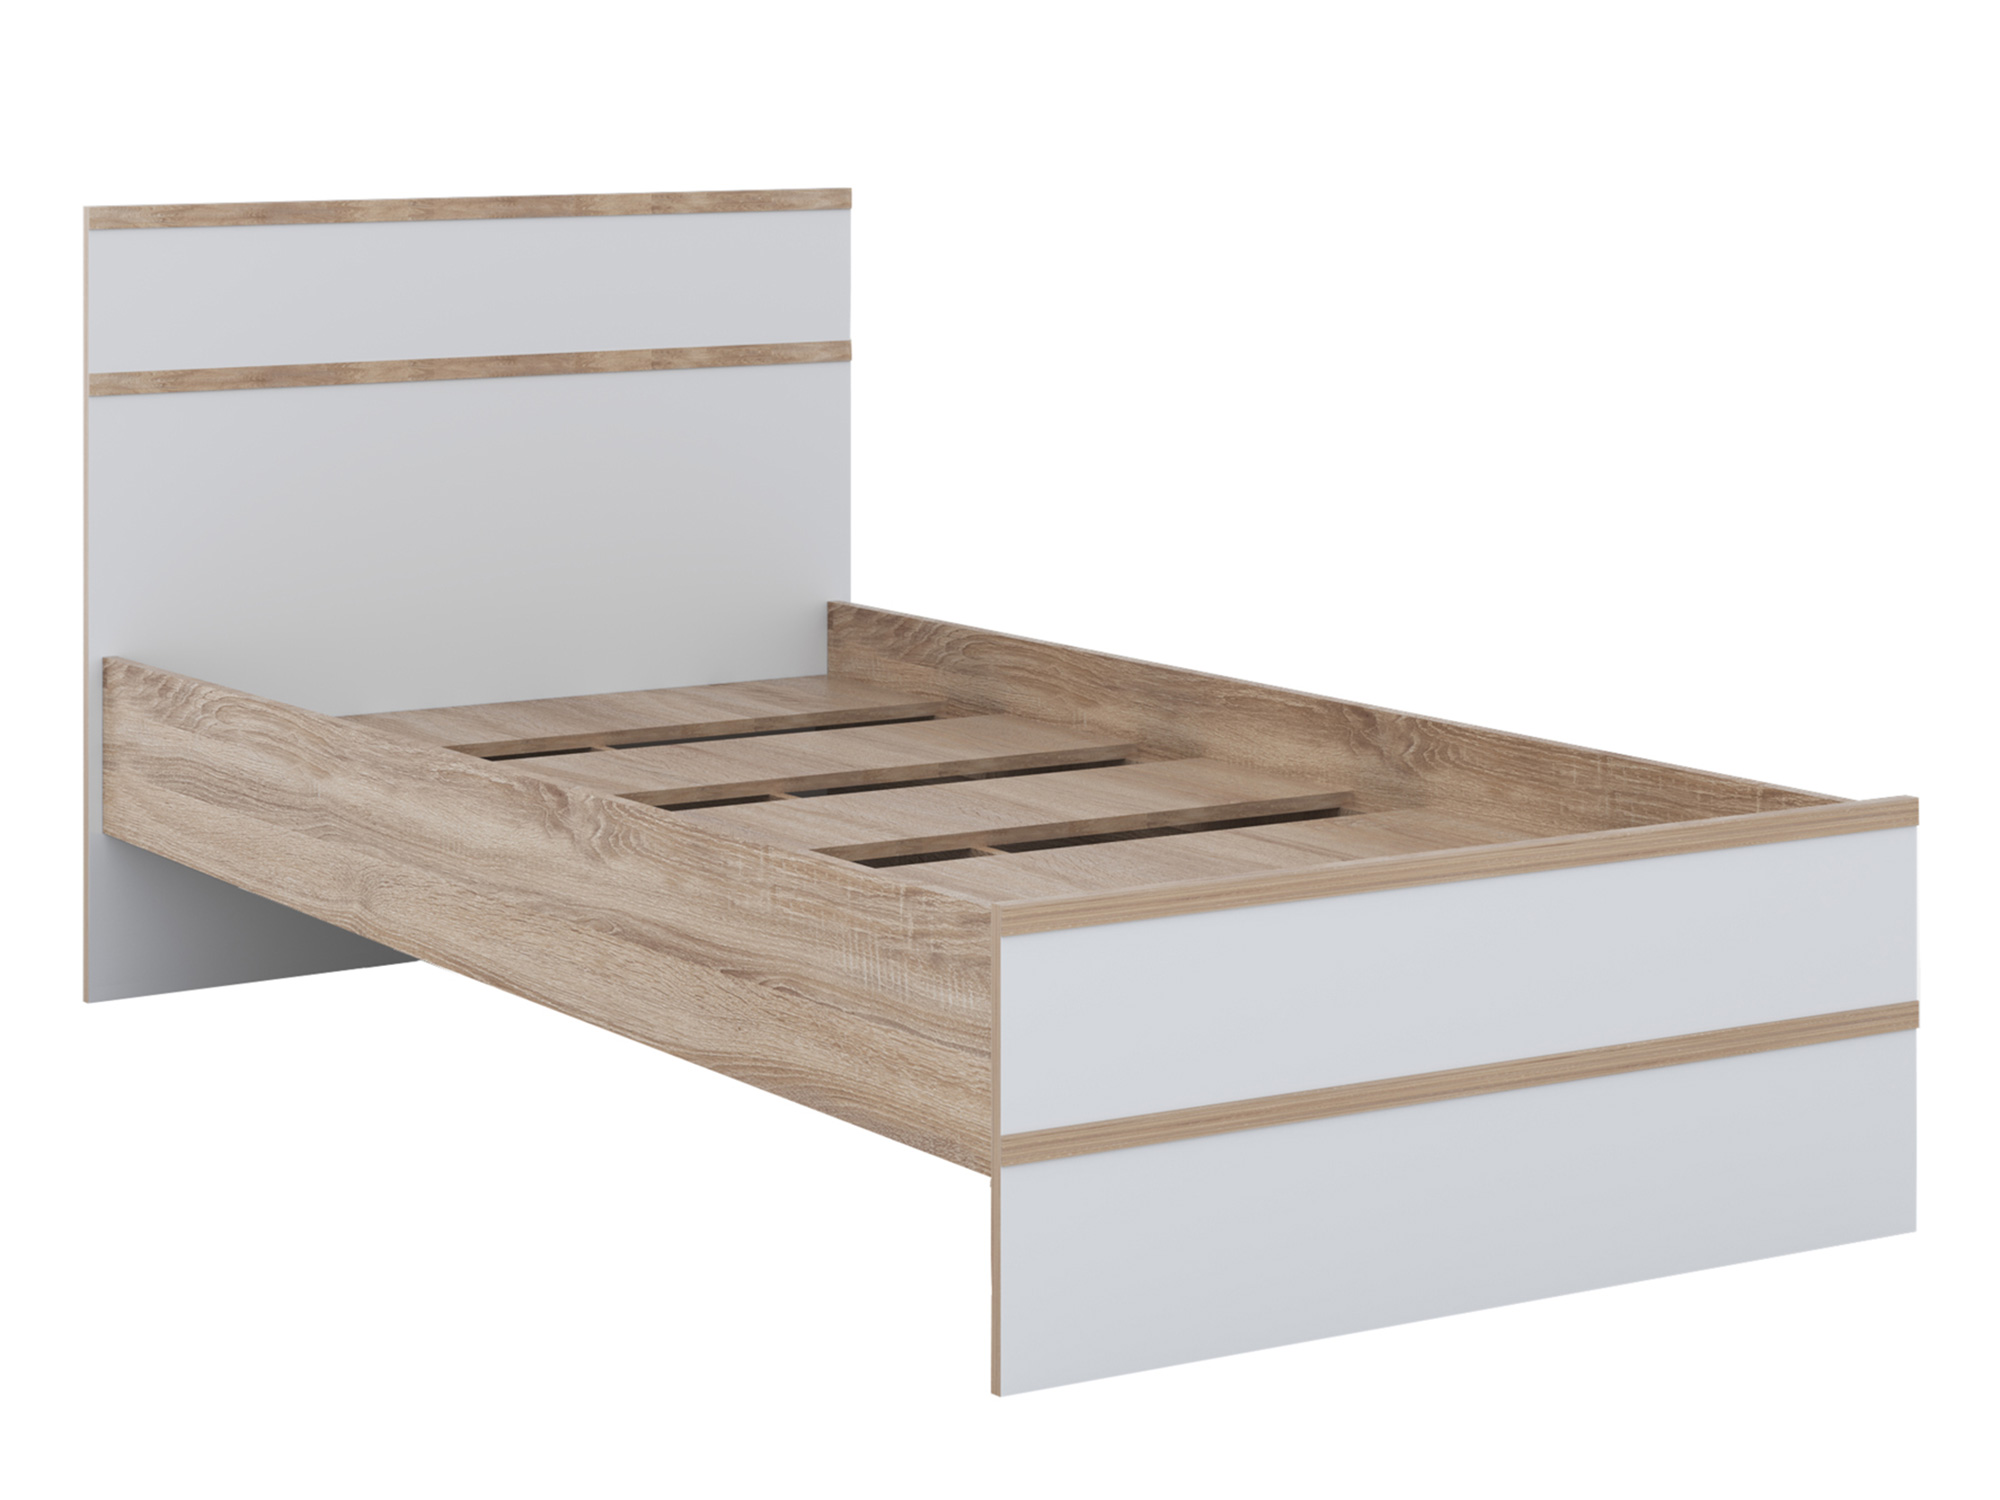 Кровать Сакура (90х200) Белый, Бежевый, ЛДСП кровать с проложками дсп сакура light 90х200 коричневый темный бежевый лдсп